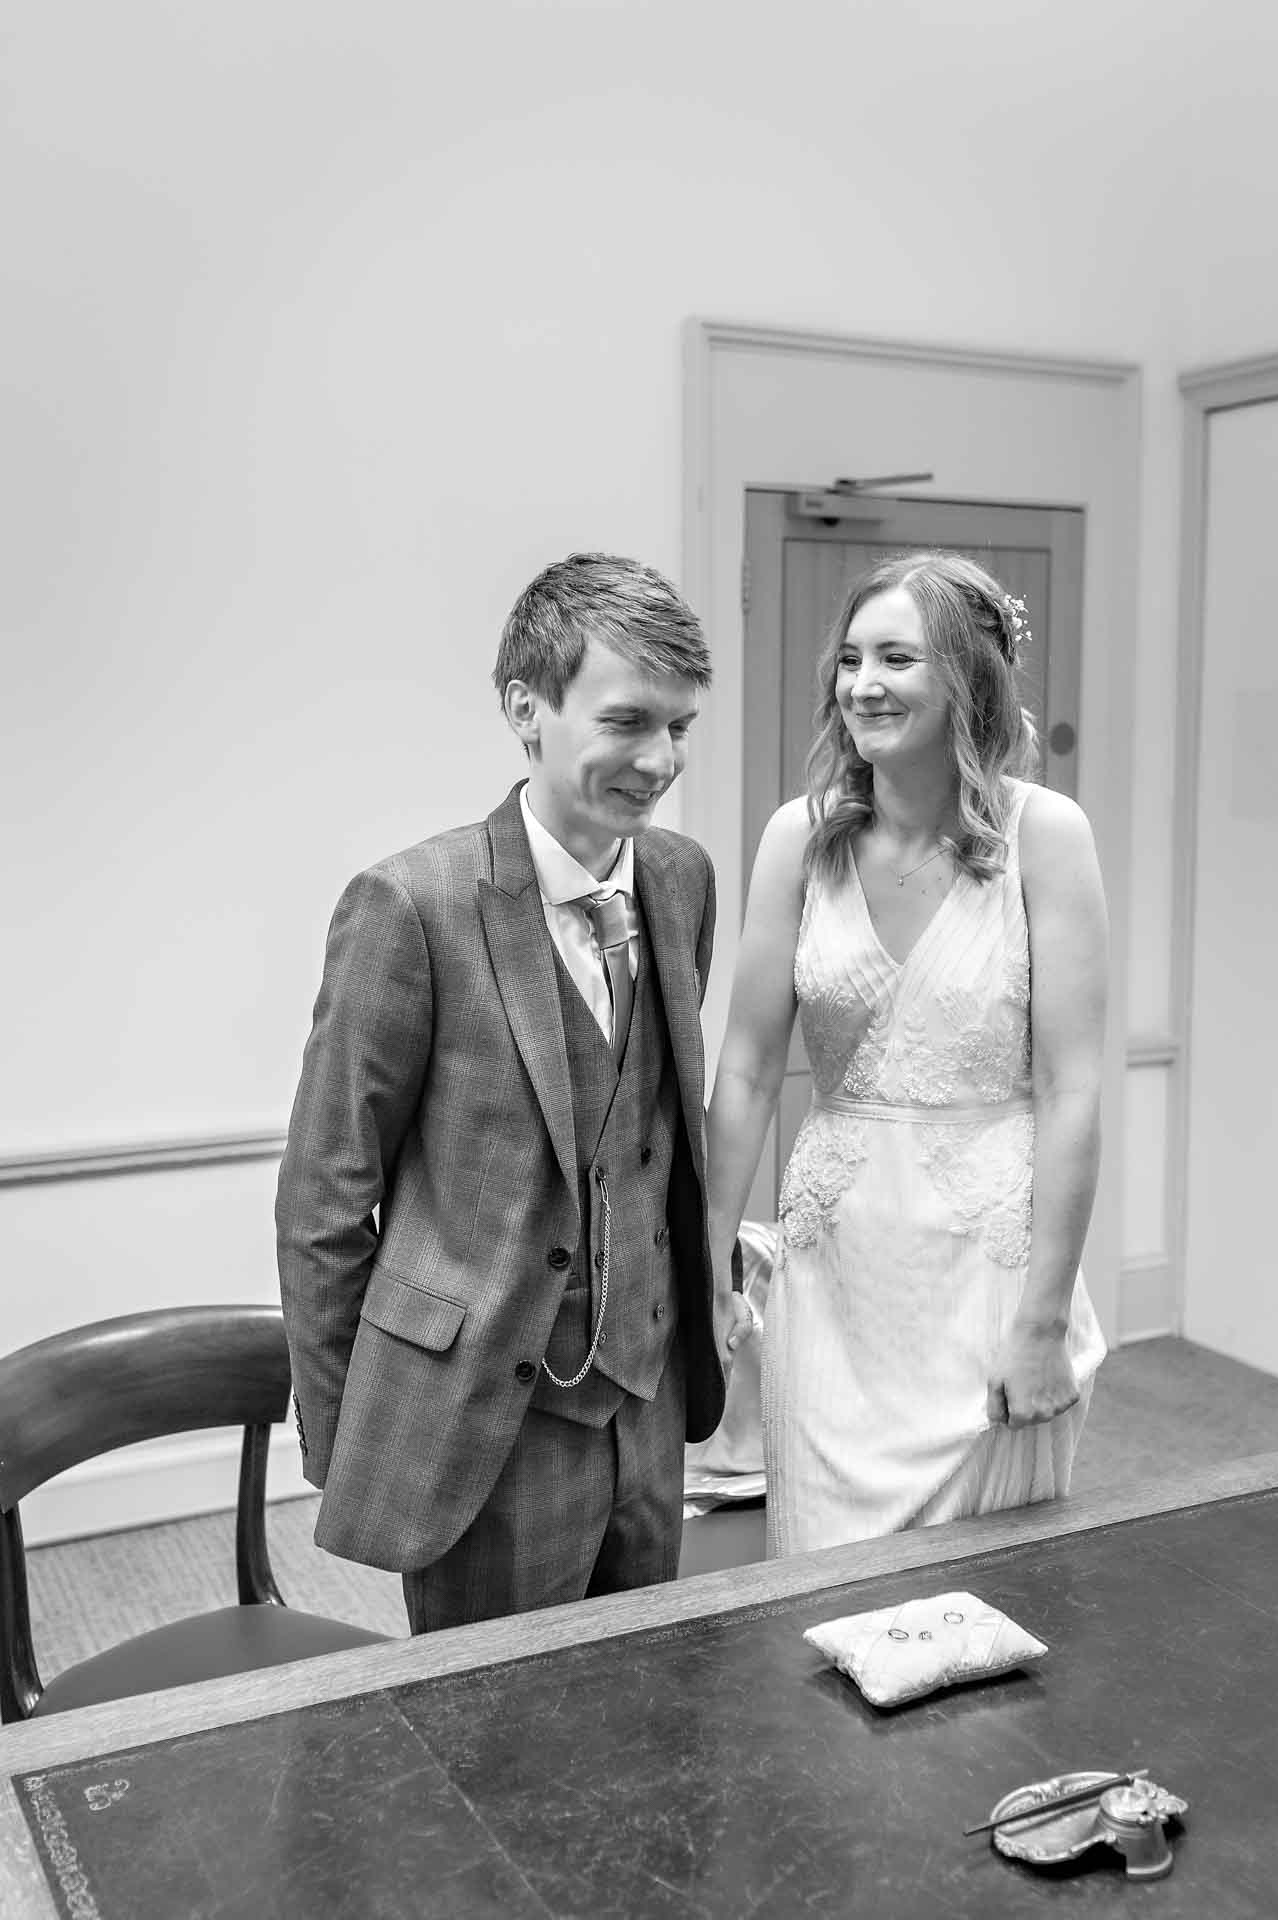 Bride smiling at groom at wedding in Statutory Room at Bristol Register Office